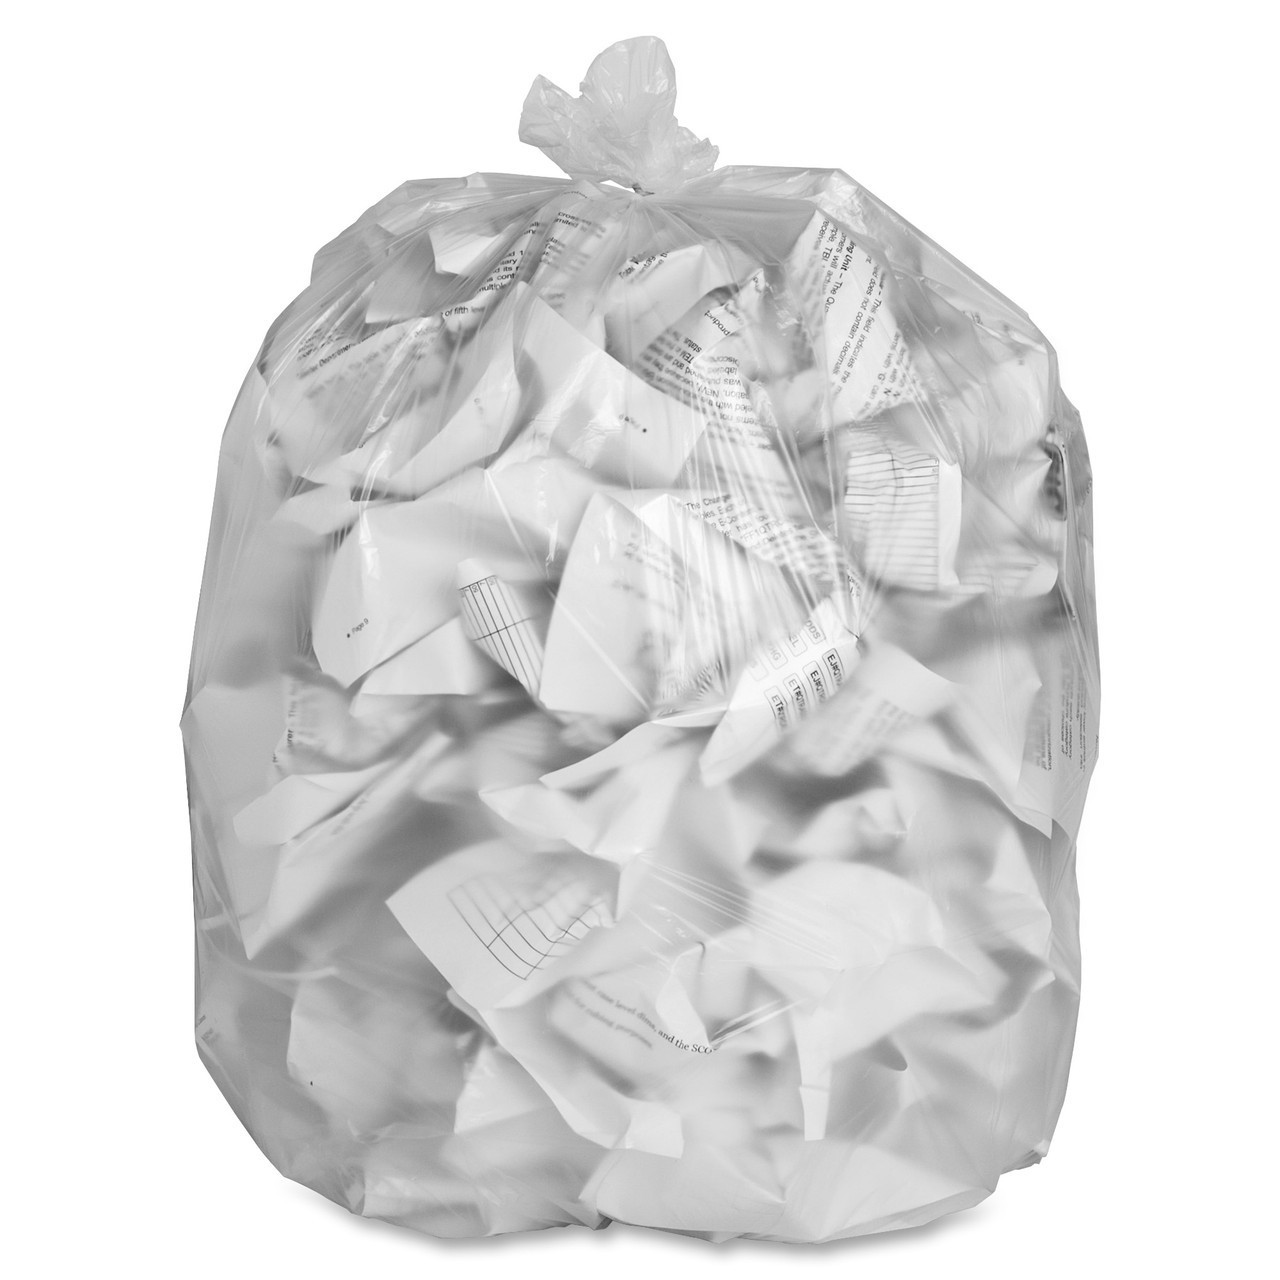 Mint-X Trash Bag,56 gal.,Clear,PK200 MX4348HD C16 